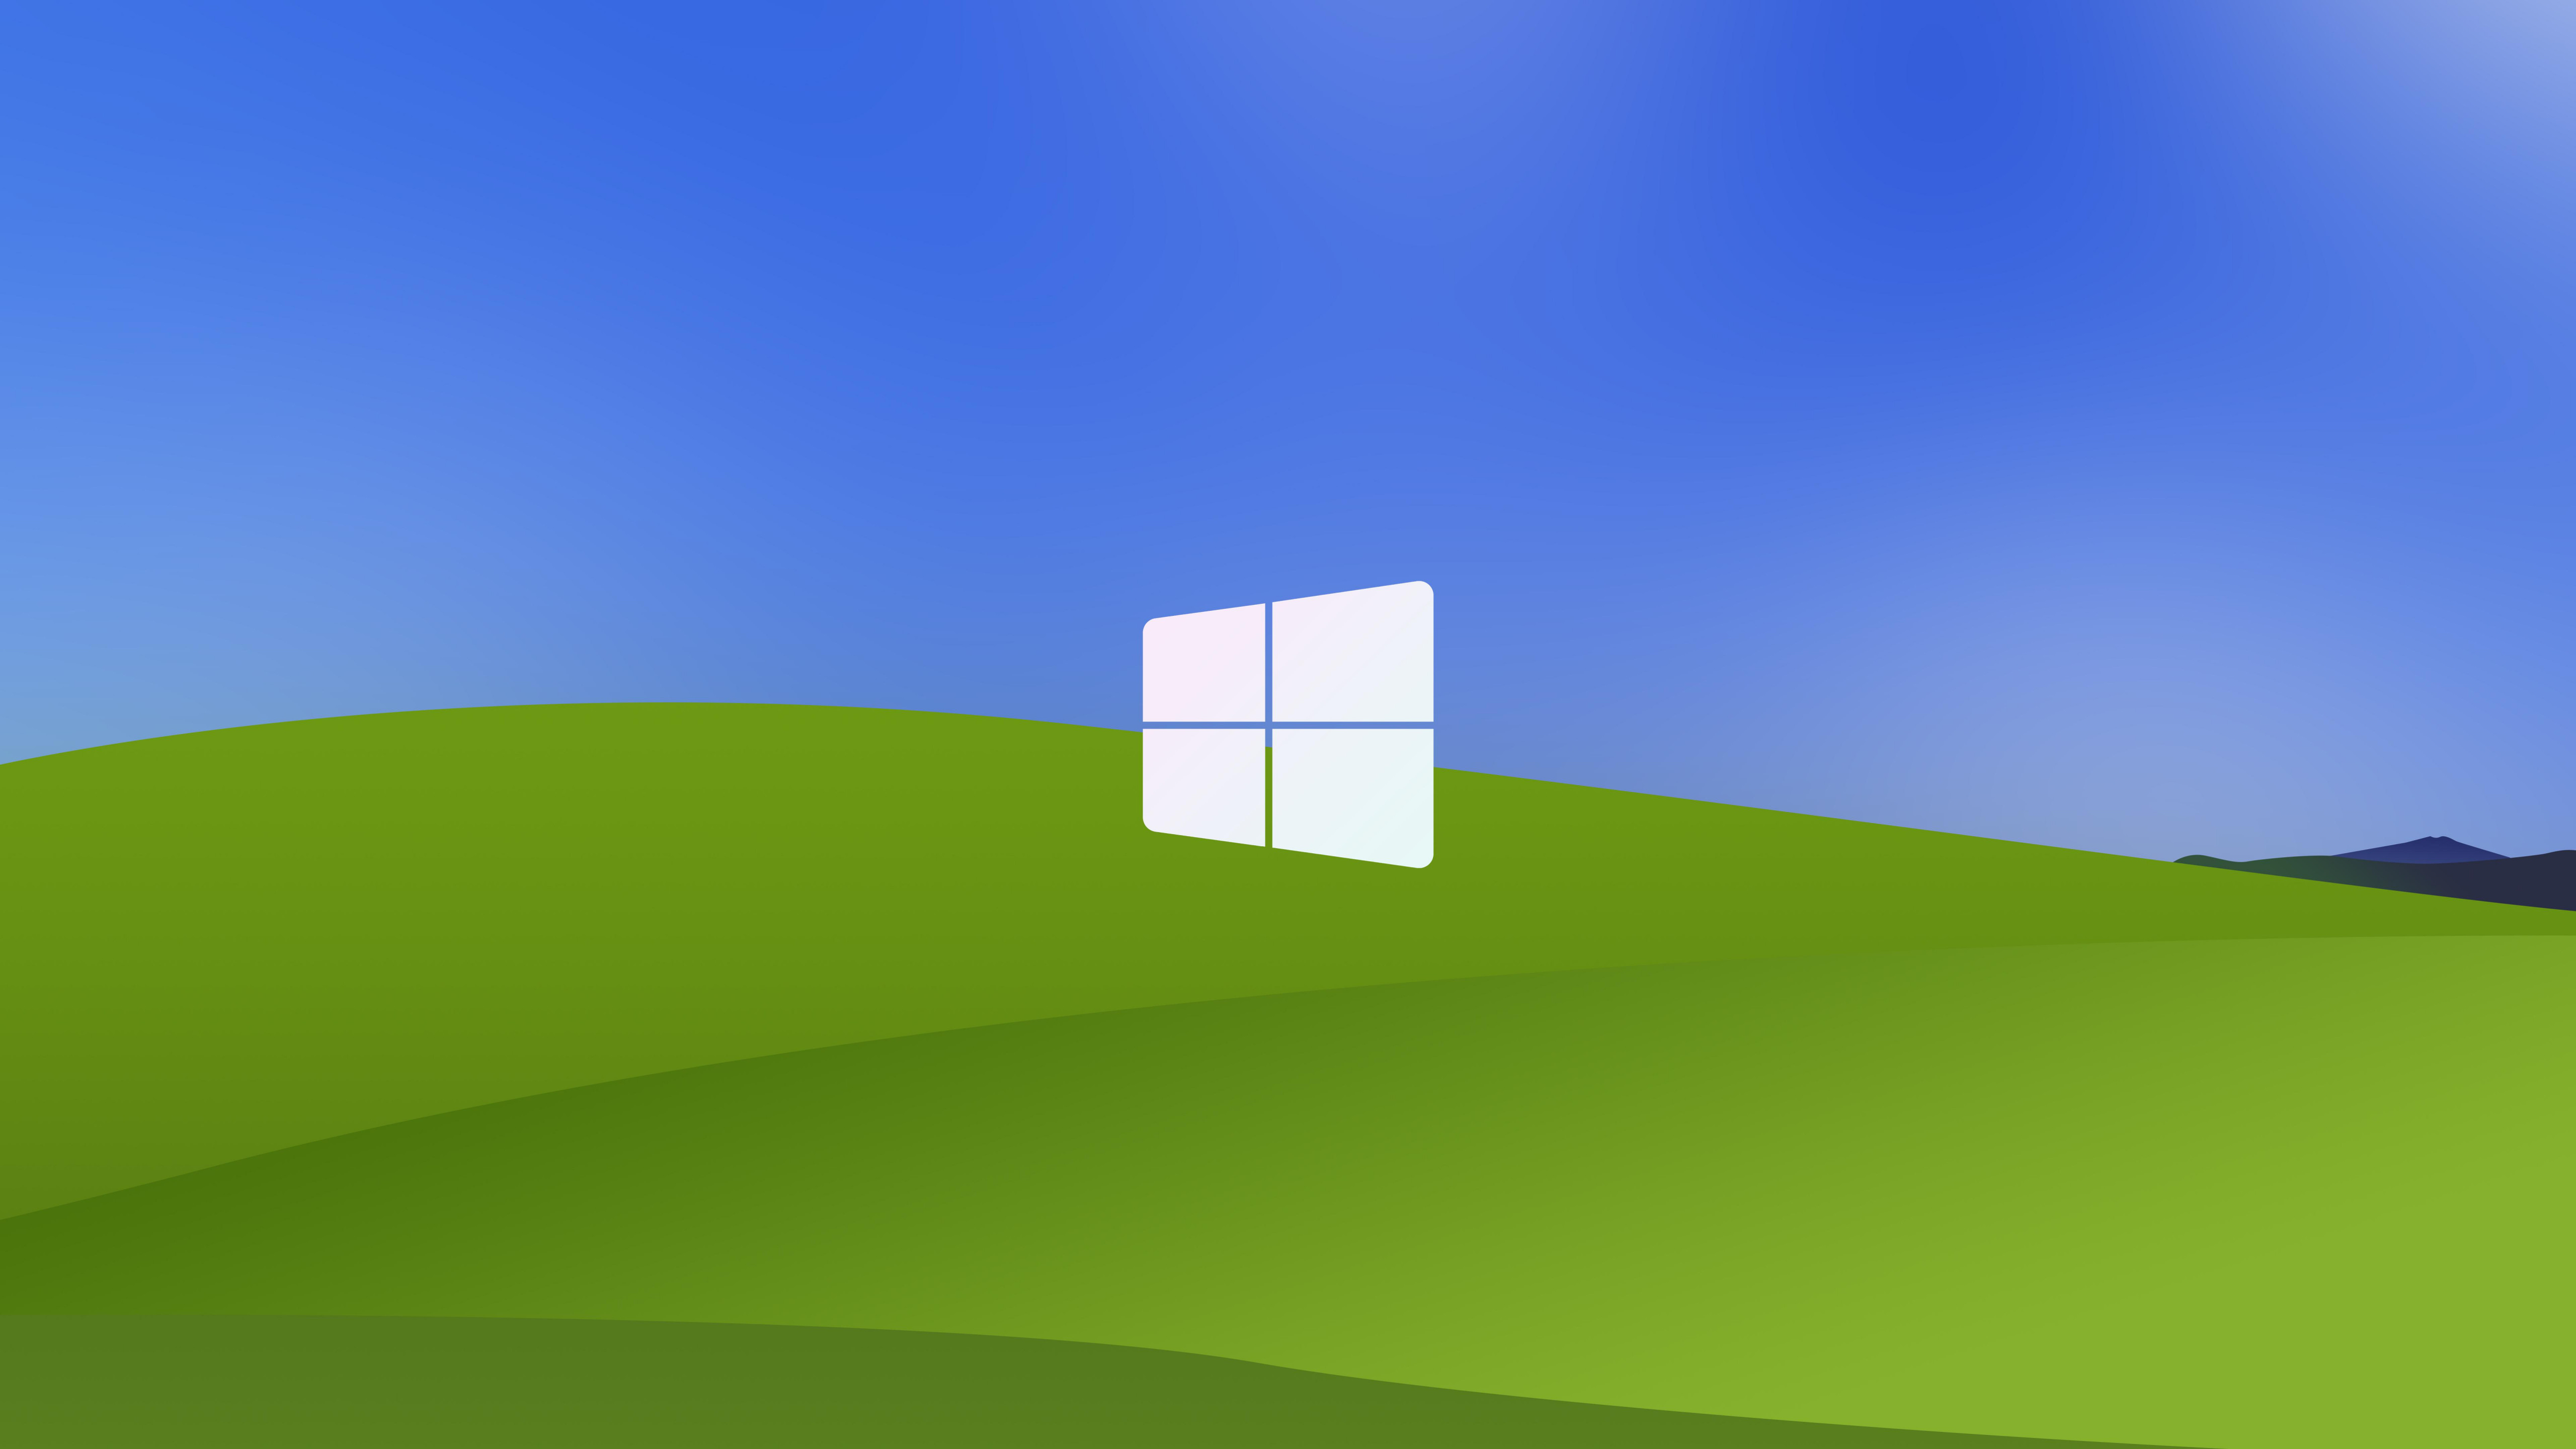 Tạo nên sự độc đáo cho giao diện desktop với hình nền độc đáo - Hình nền Windows XP đơn giản và truyền thống, nhưng bạn vẫn có thể tùy biến nó để tạo ra một giao diện desktop đầy tính nghệ thuật và cá tính. Hãy xem chi tiết để tìm kiếm những hình nền độc đáo nhất.